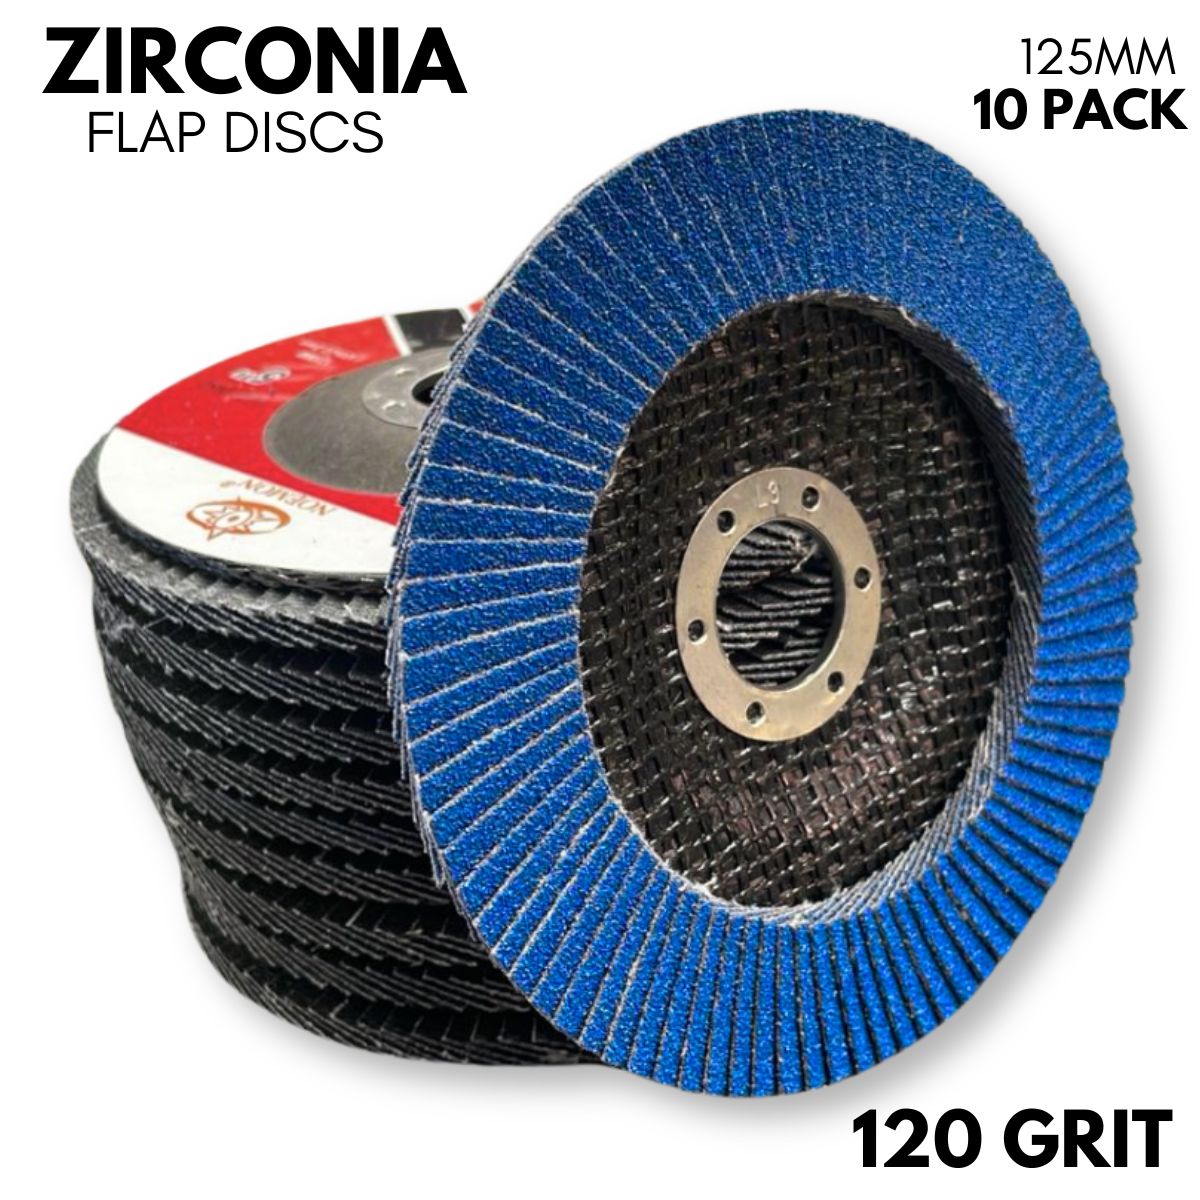 10 Pack | 125mm (5”) Flap Discs | 120 GRIT Zirconia